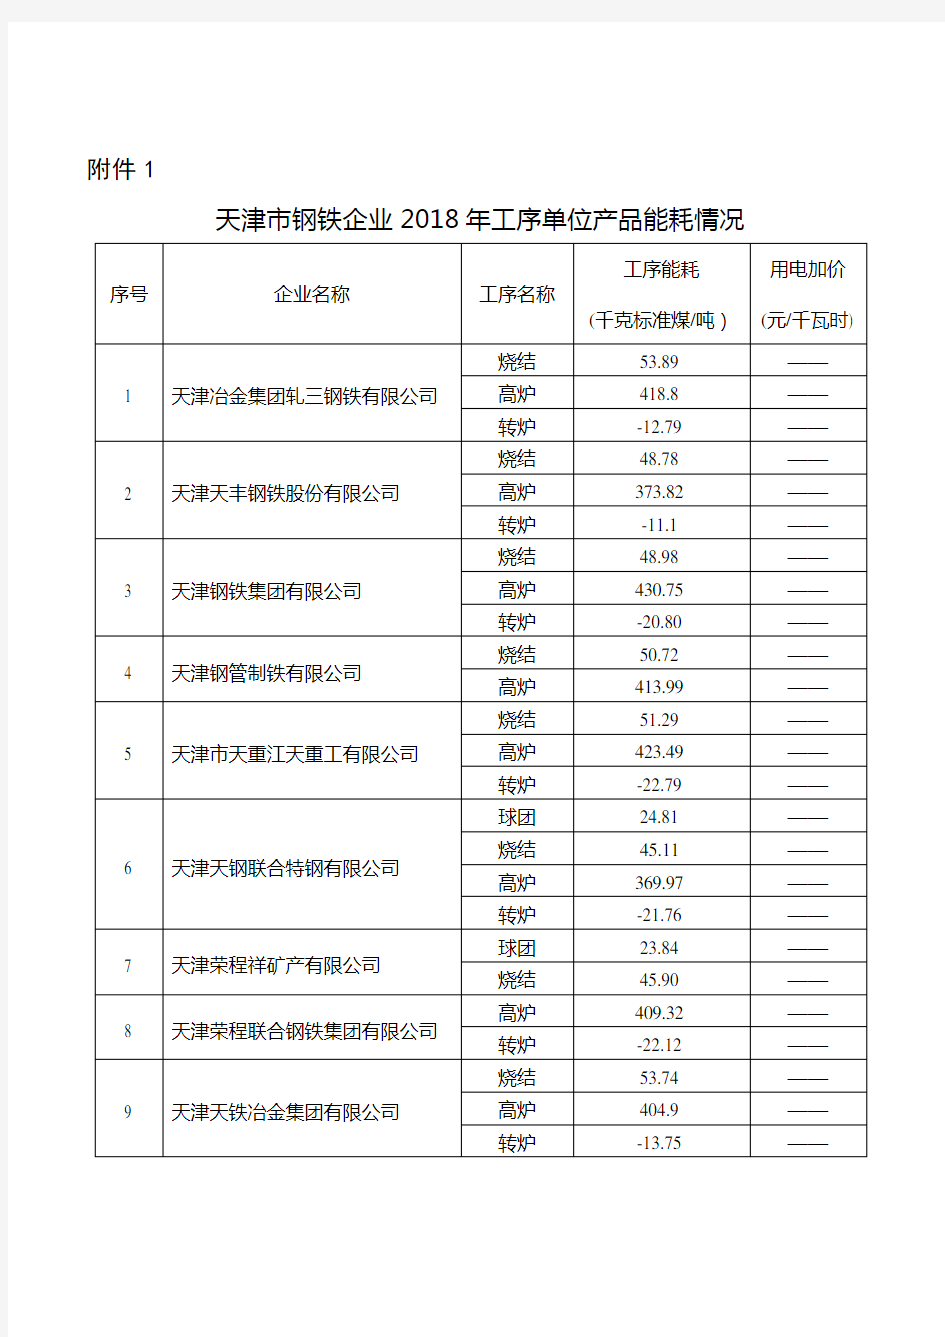 天津市钢铁企业2018年工序单位产品能耗情况